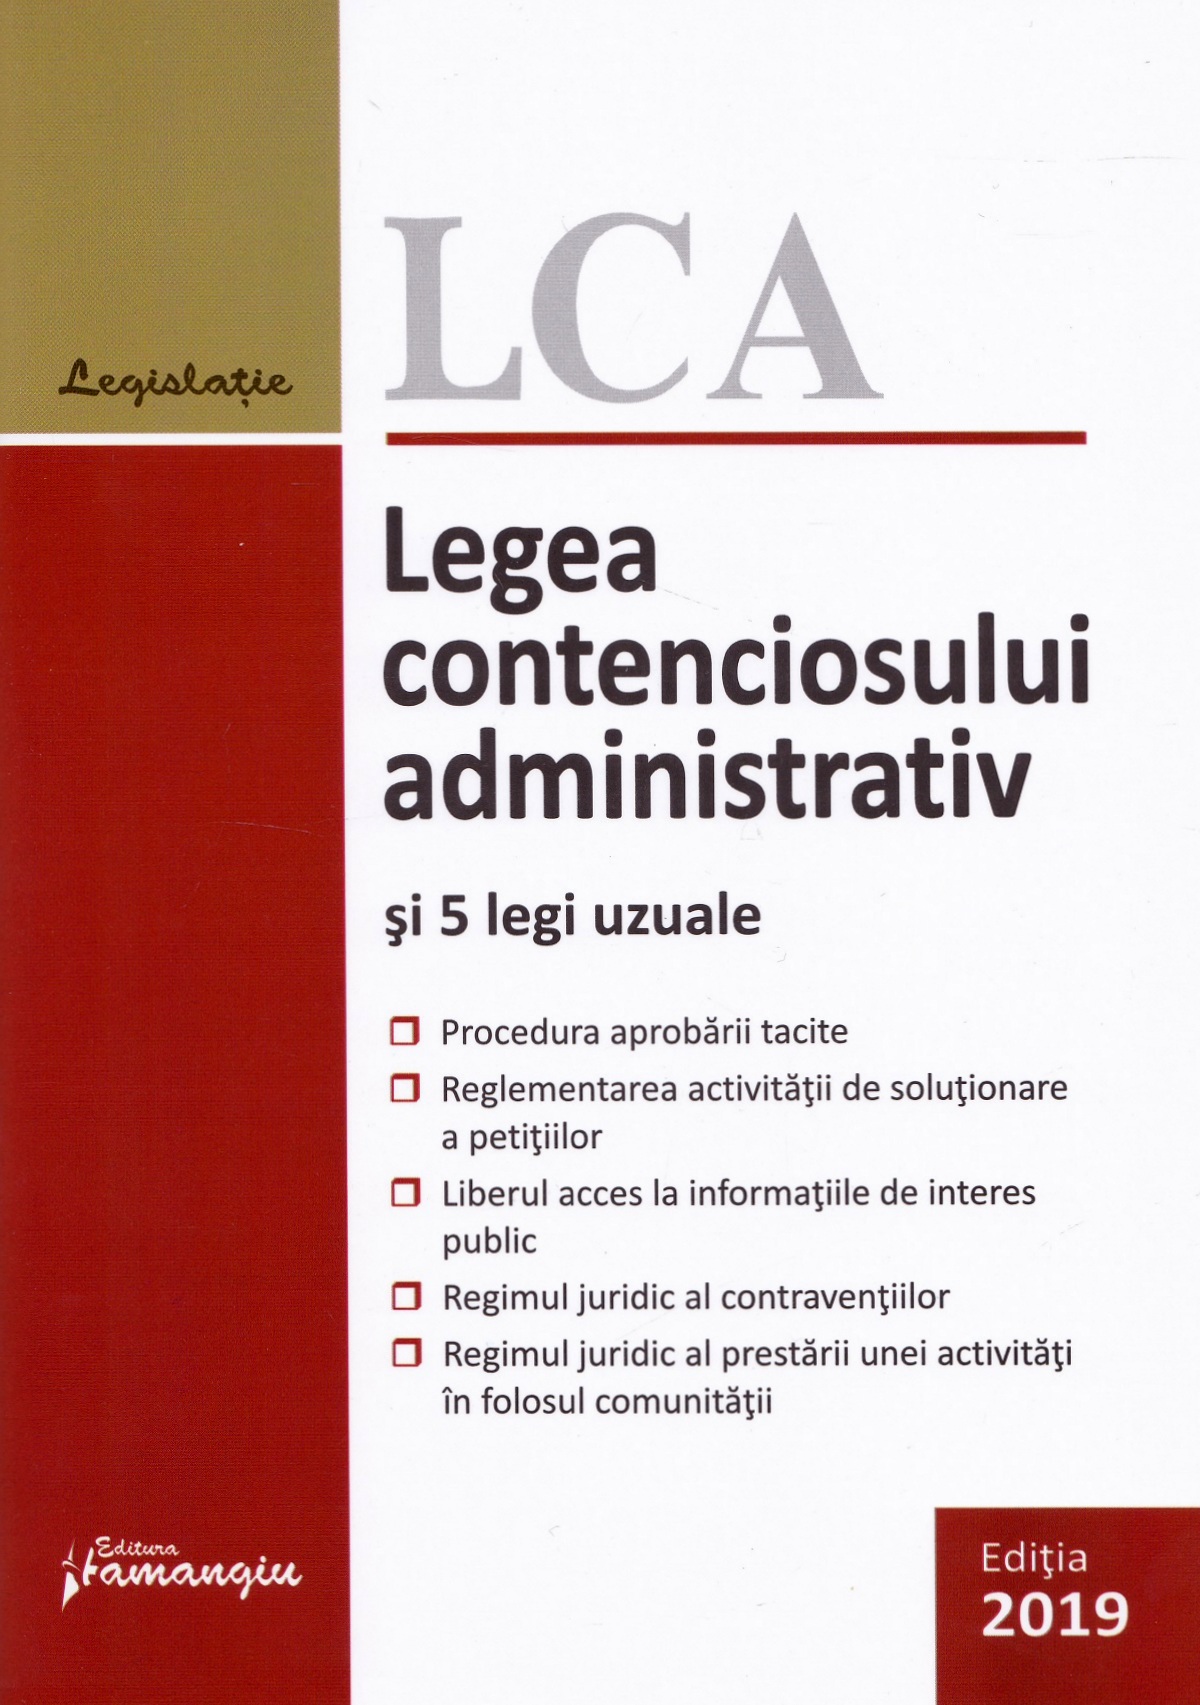 Legea contenciosului administrativ si 5 legi uzuale. Actualizat 1 septembrie 2019